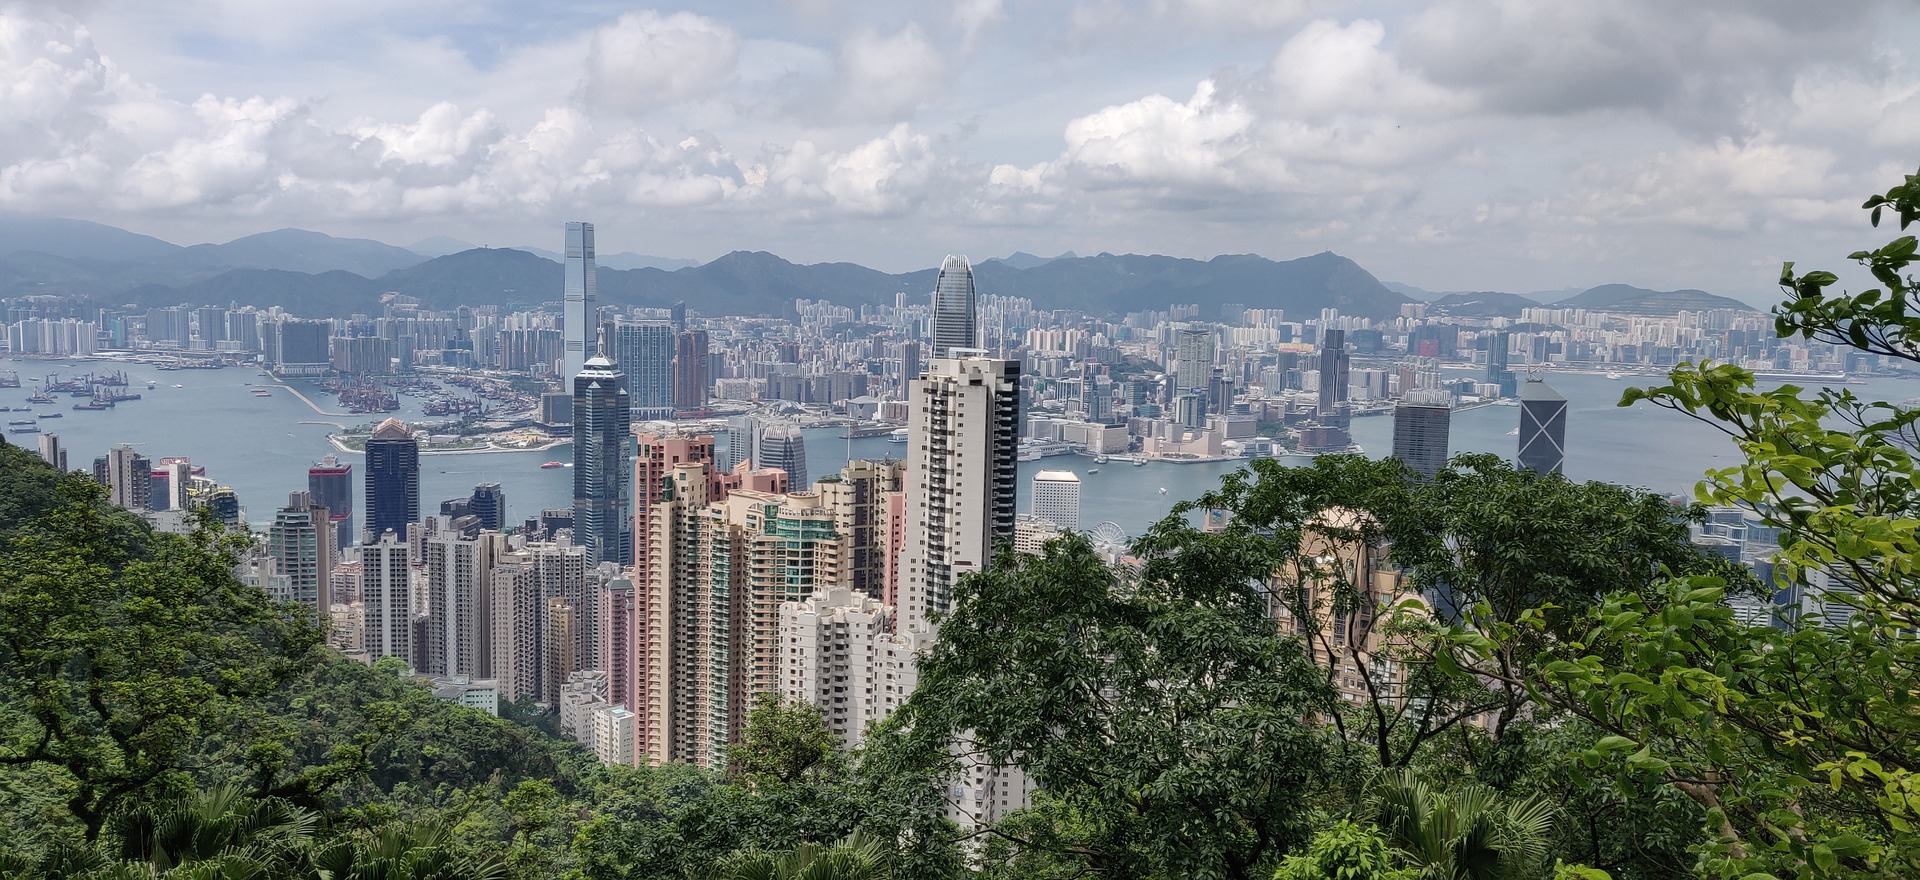 أفضل 7 أماكن سياحية في هونغ كونغ ستدهشك